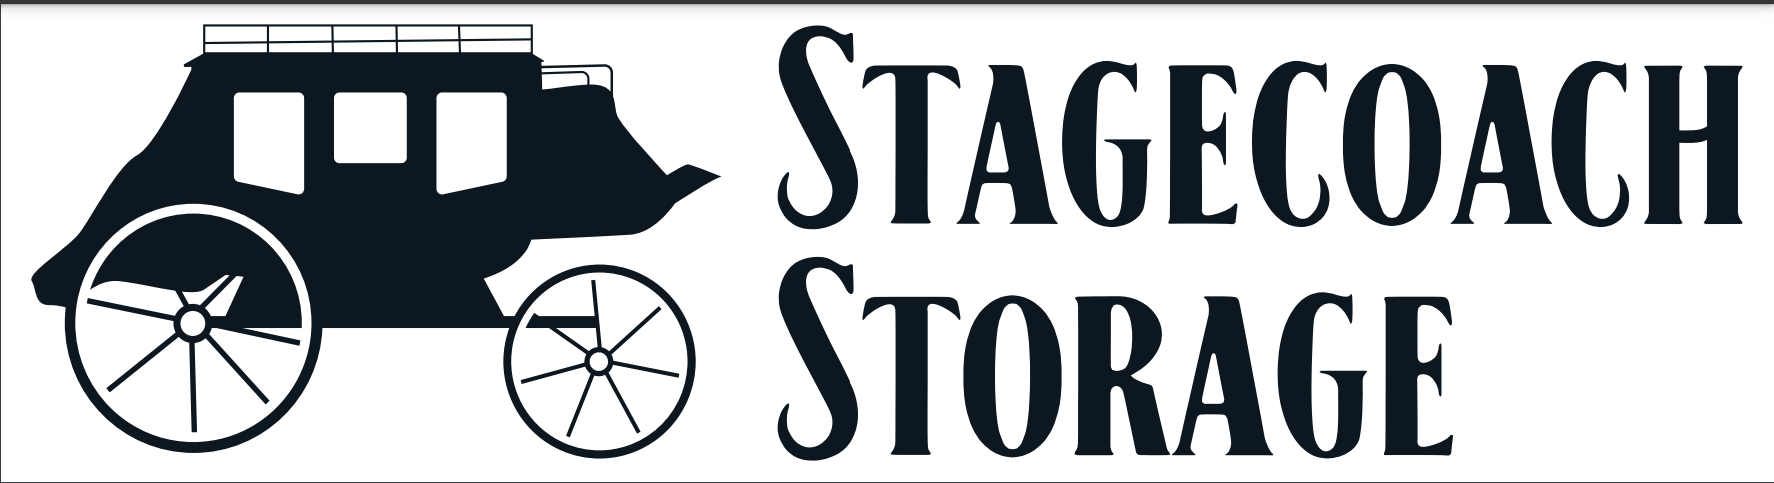 Stagecoach Storage